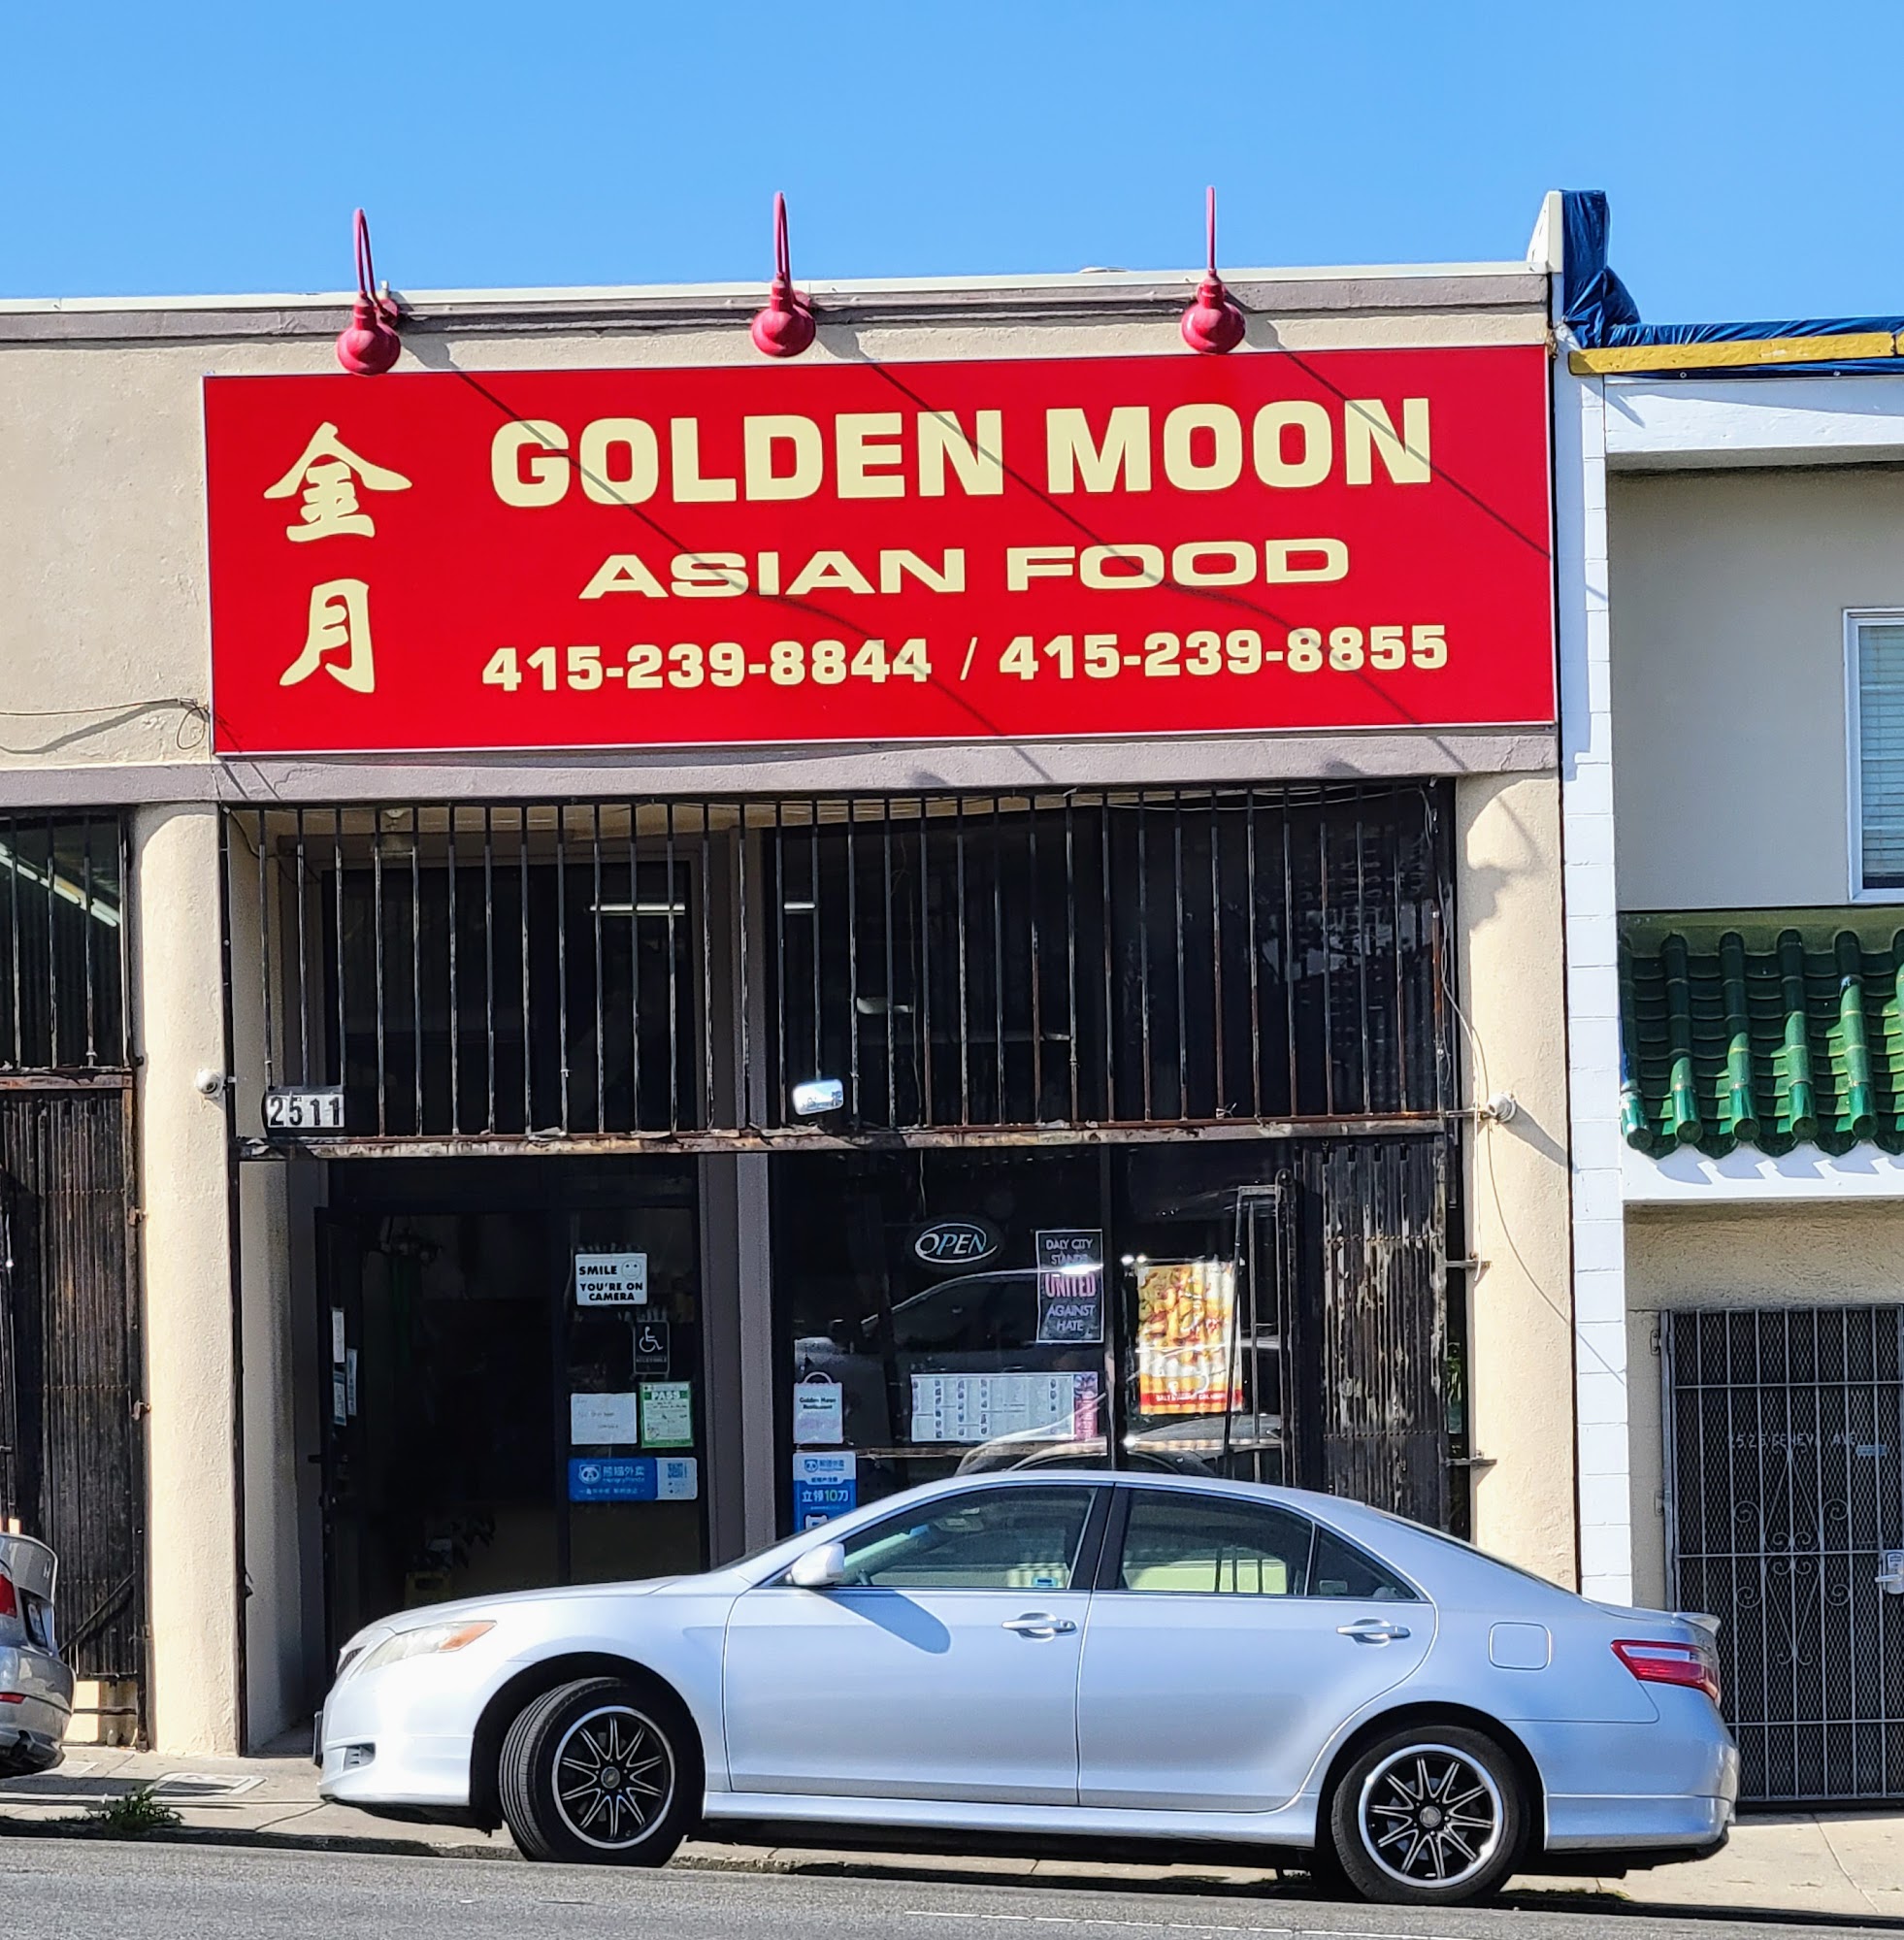 Golden Moon Restaurant